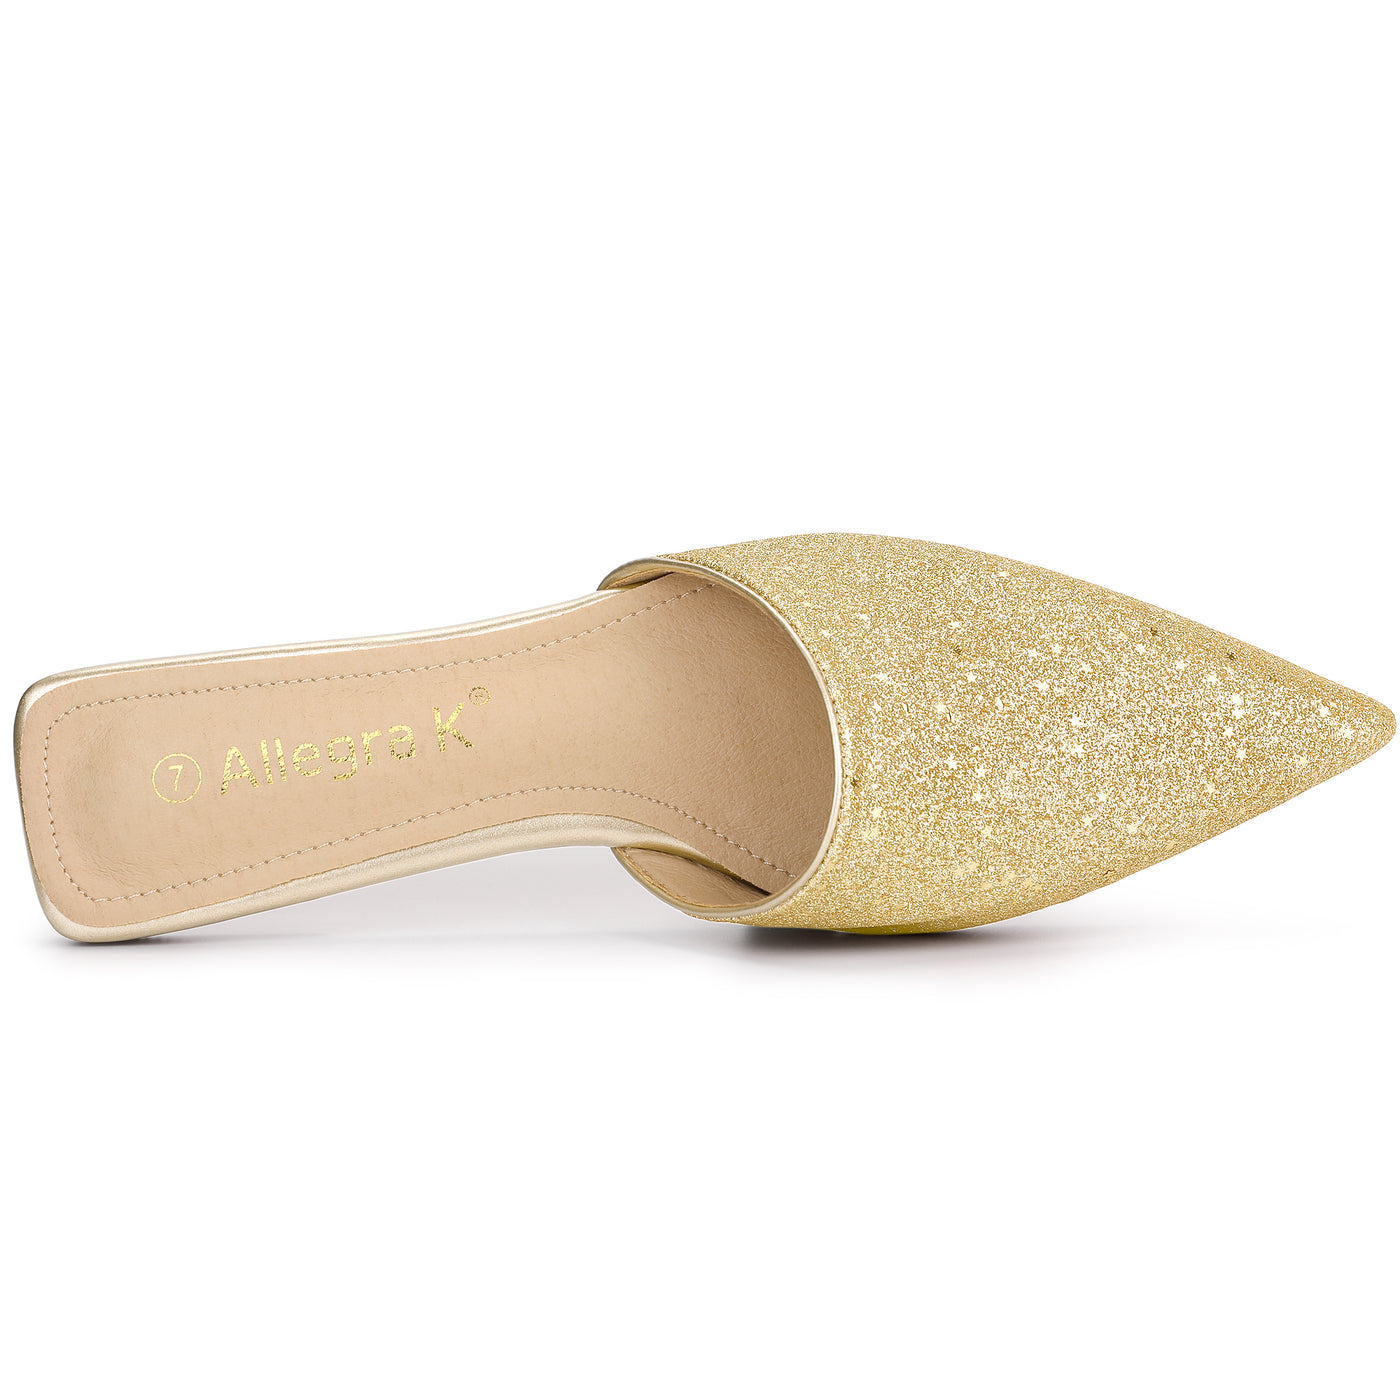 Allegra K Women's Slip On Glitter Heels Pointed Toe Slide Mules